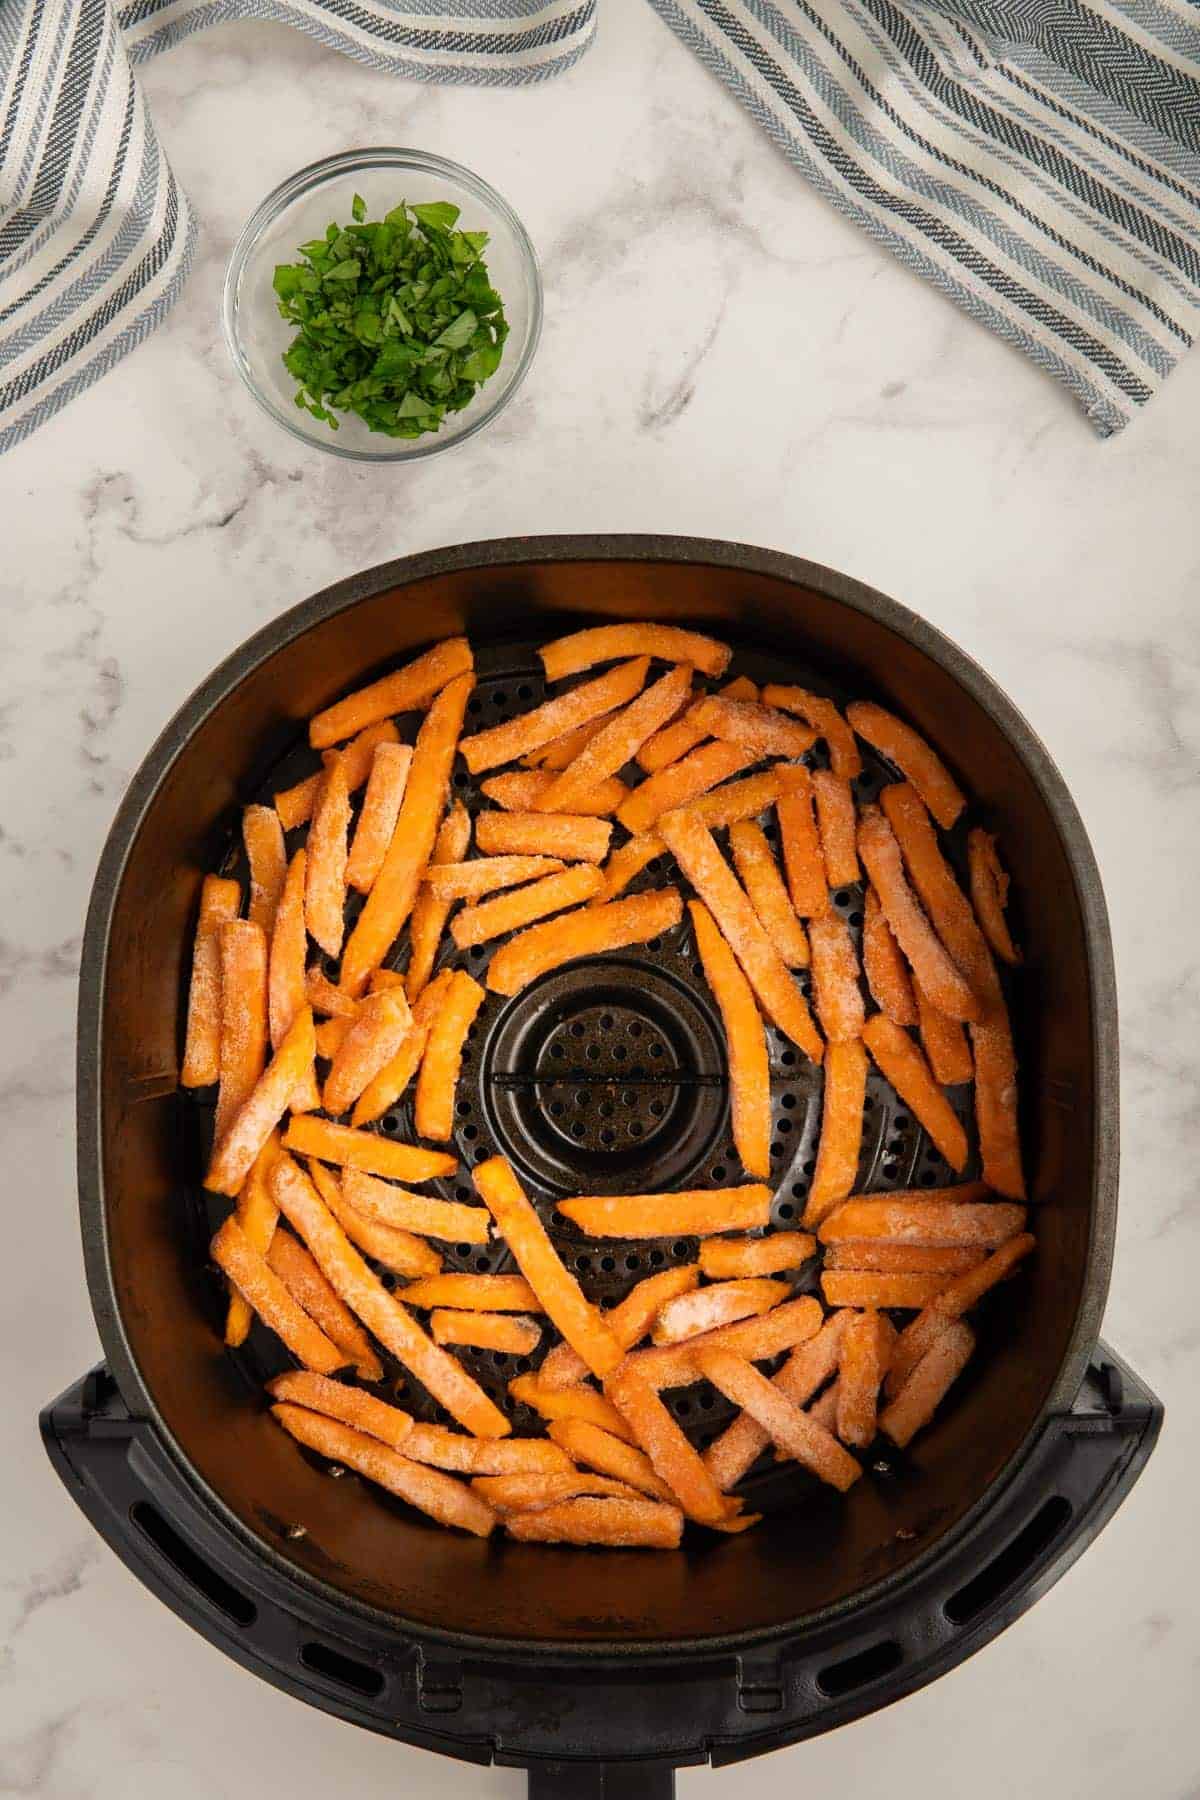 Frozen sweet potato fries in air fryer basket.